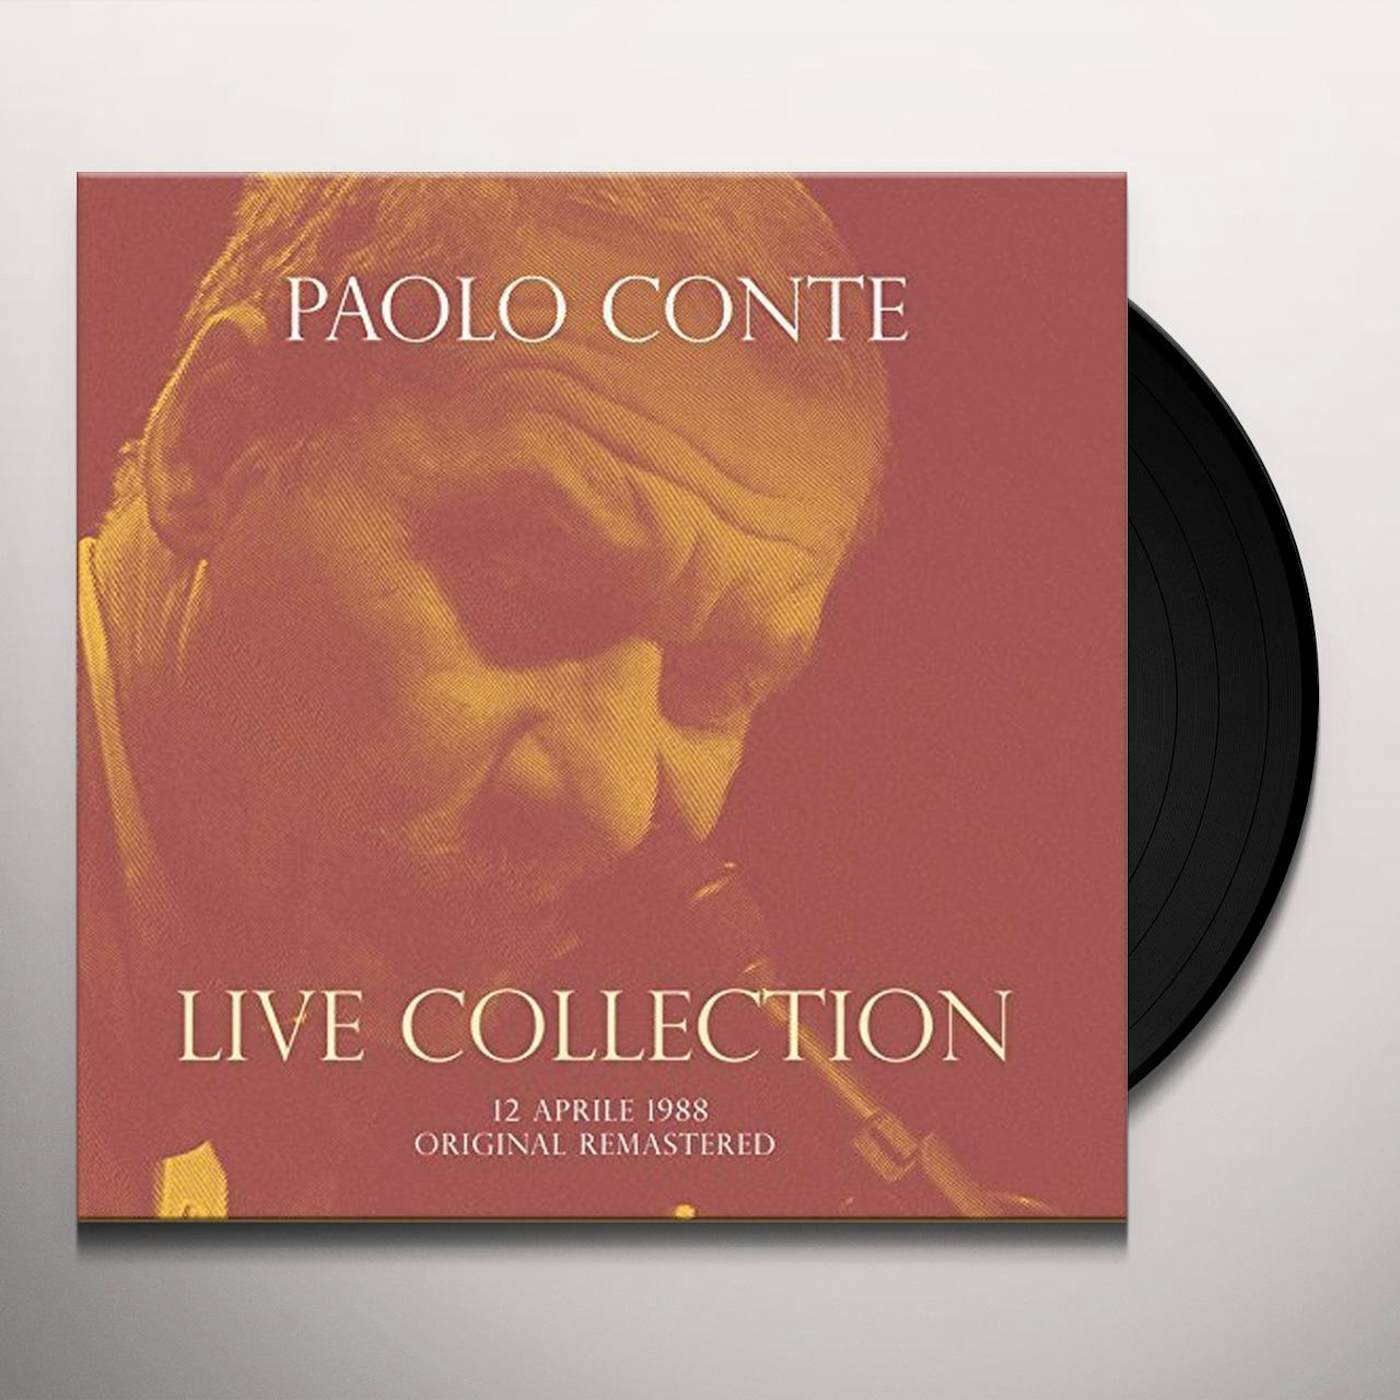 Paolo Conte CONCERTO LIVE AT RSI (12 APRILE 1988) Vinyl Record